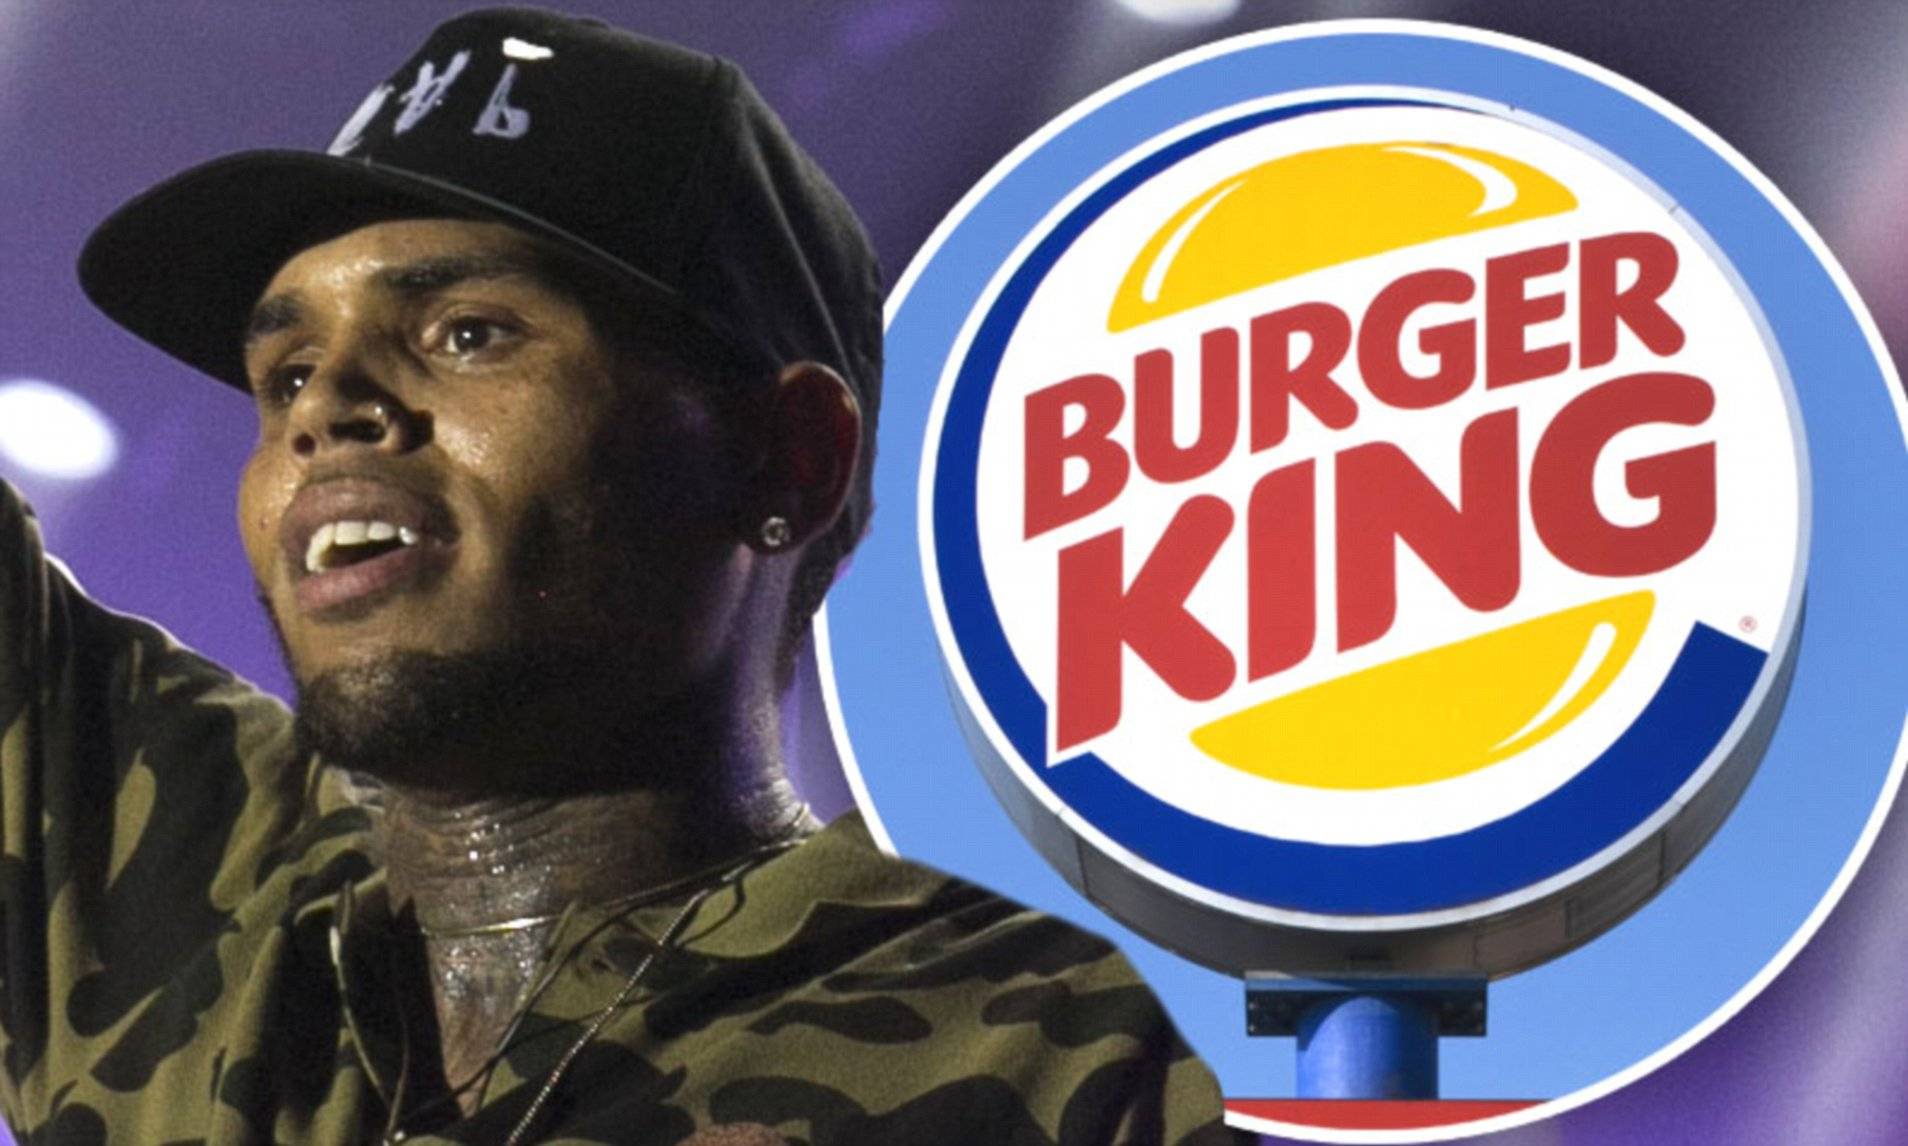 Chris Brown Burger King